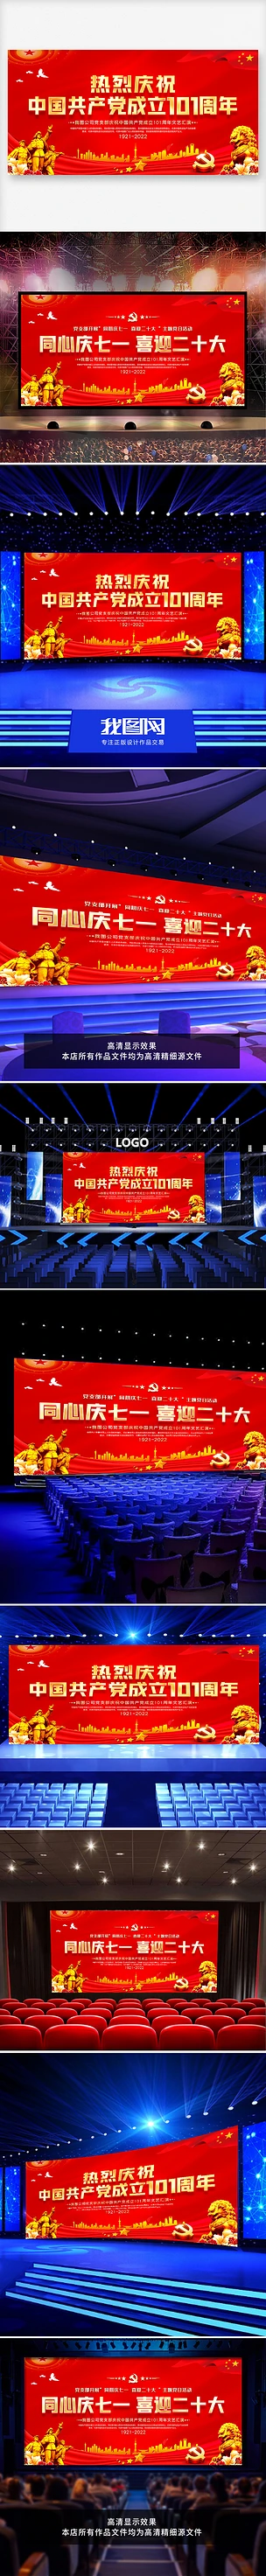 热烈庆祝中国共产党成立101周年晚会背景图